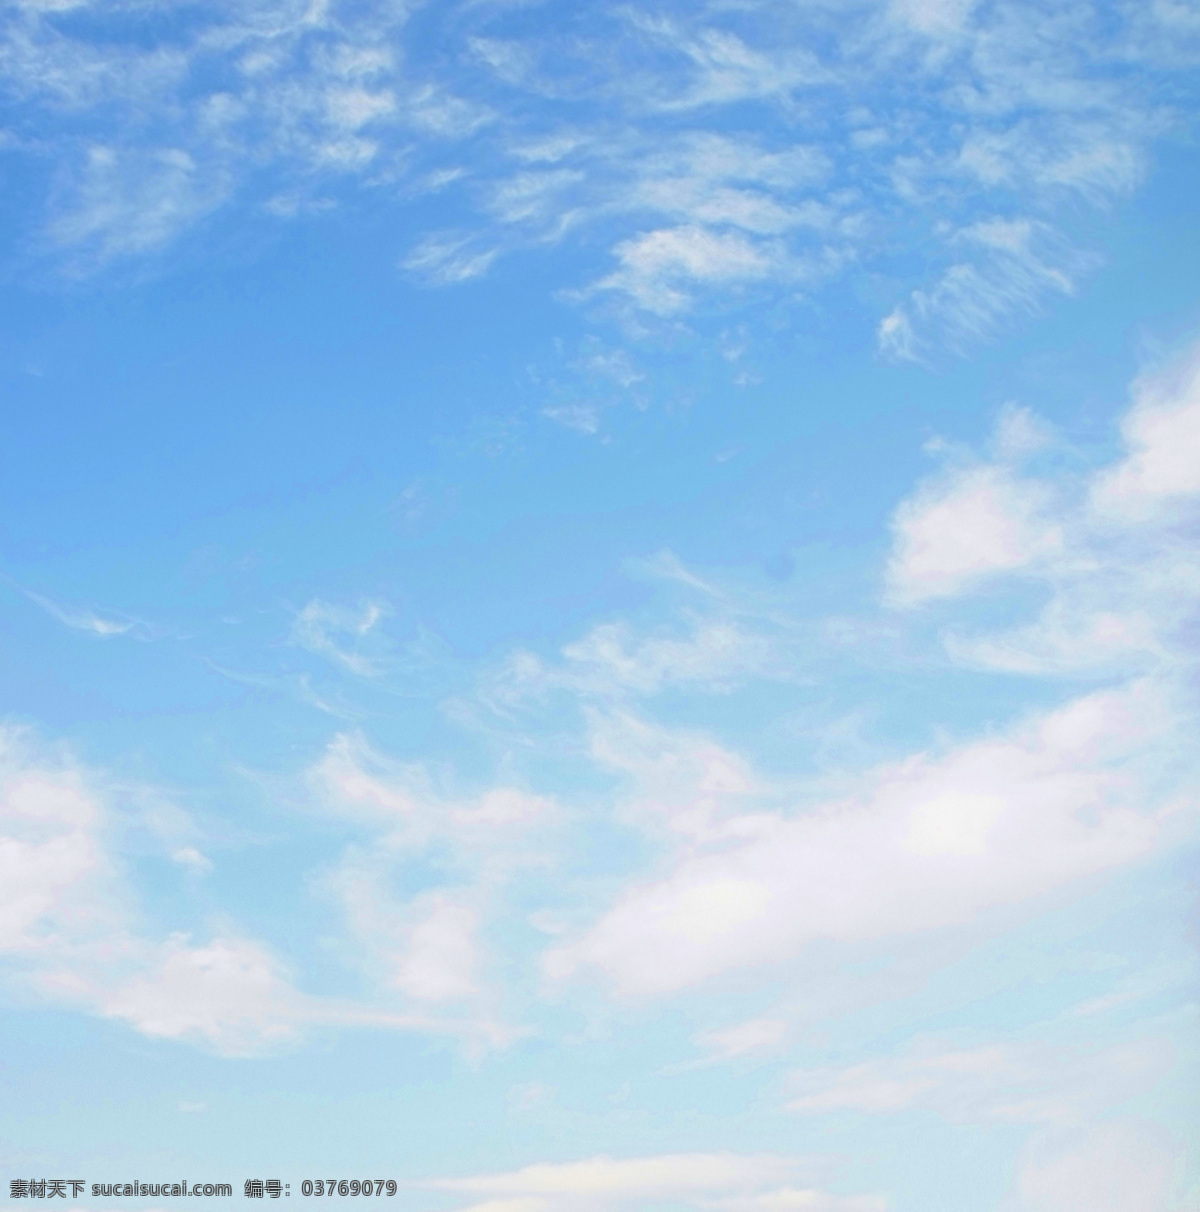 蓝天 白云 天空 天空摄影 海阔天空 旅游摄影 自然风景